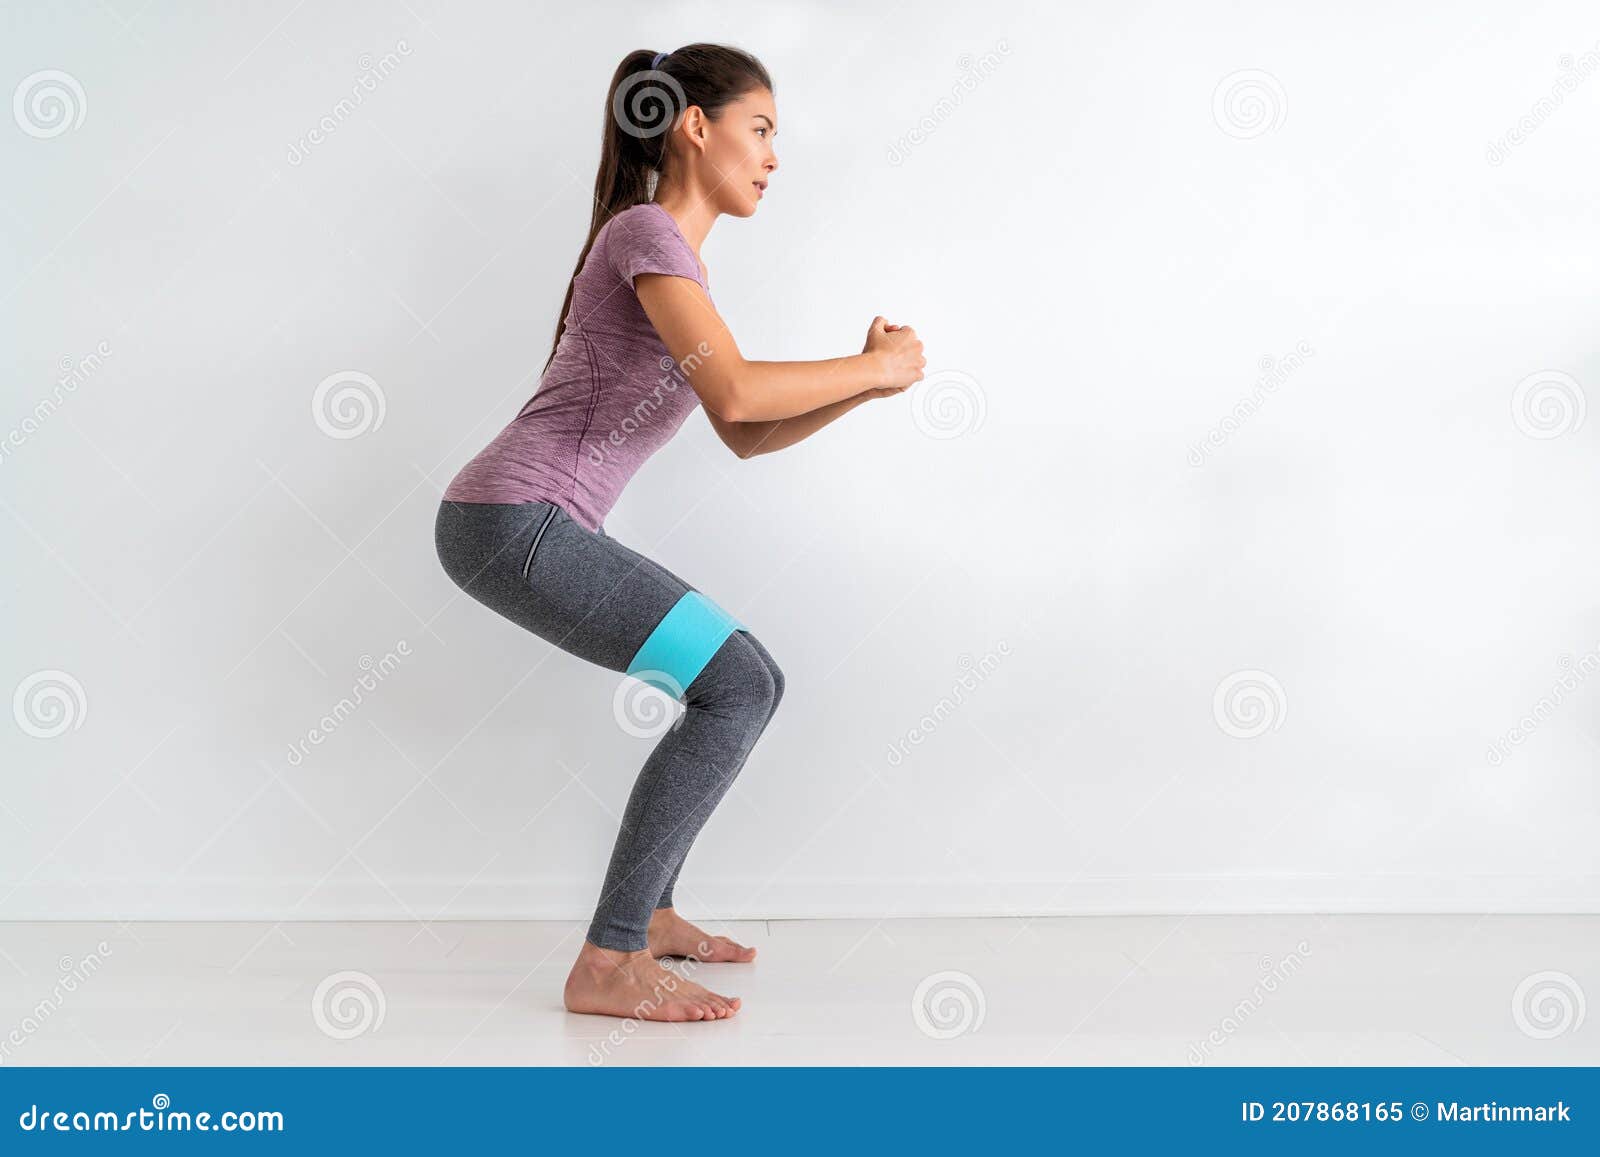 Bandas de ejercicio de resistencia para Yoga  entrenamiento de fuerza  Fitness  entrenamiento corpo 